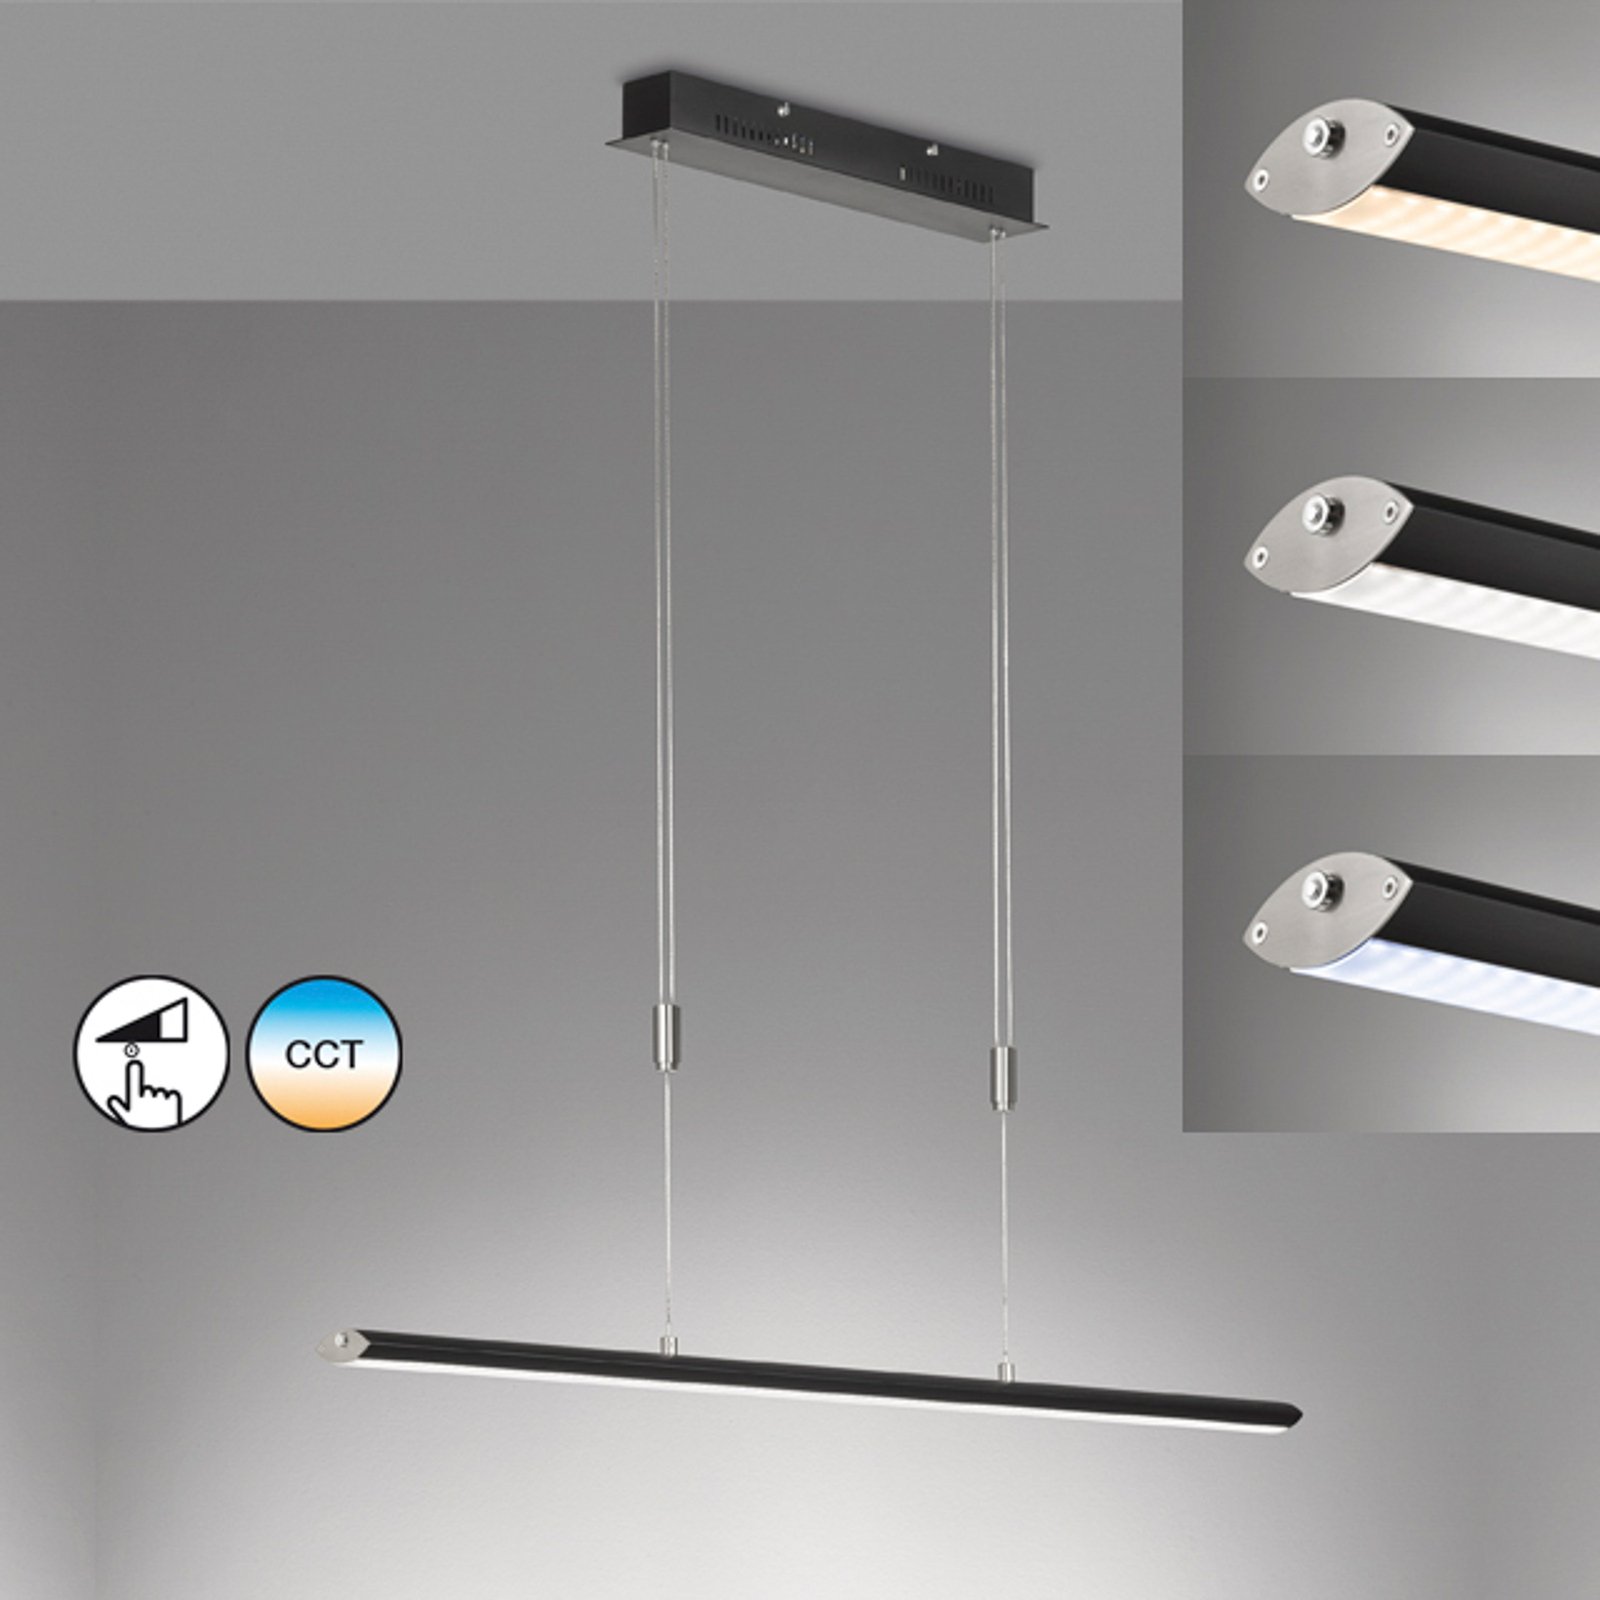 Beat LED-pendel, svart/nickelfärgad, längd 113 cm